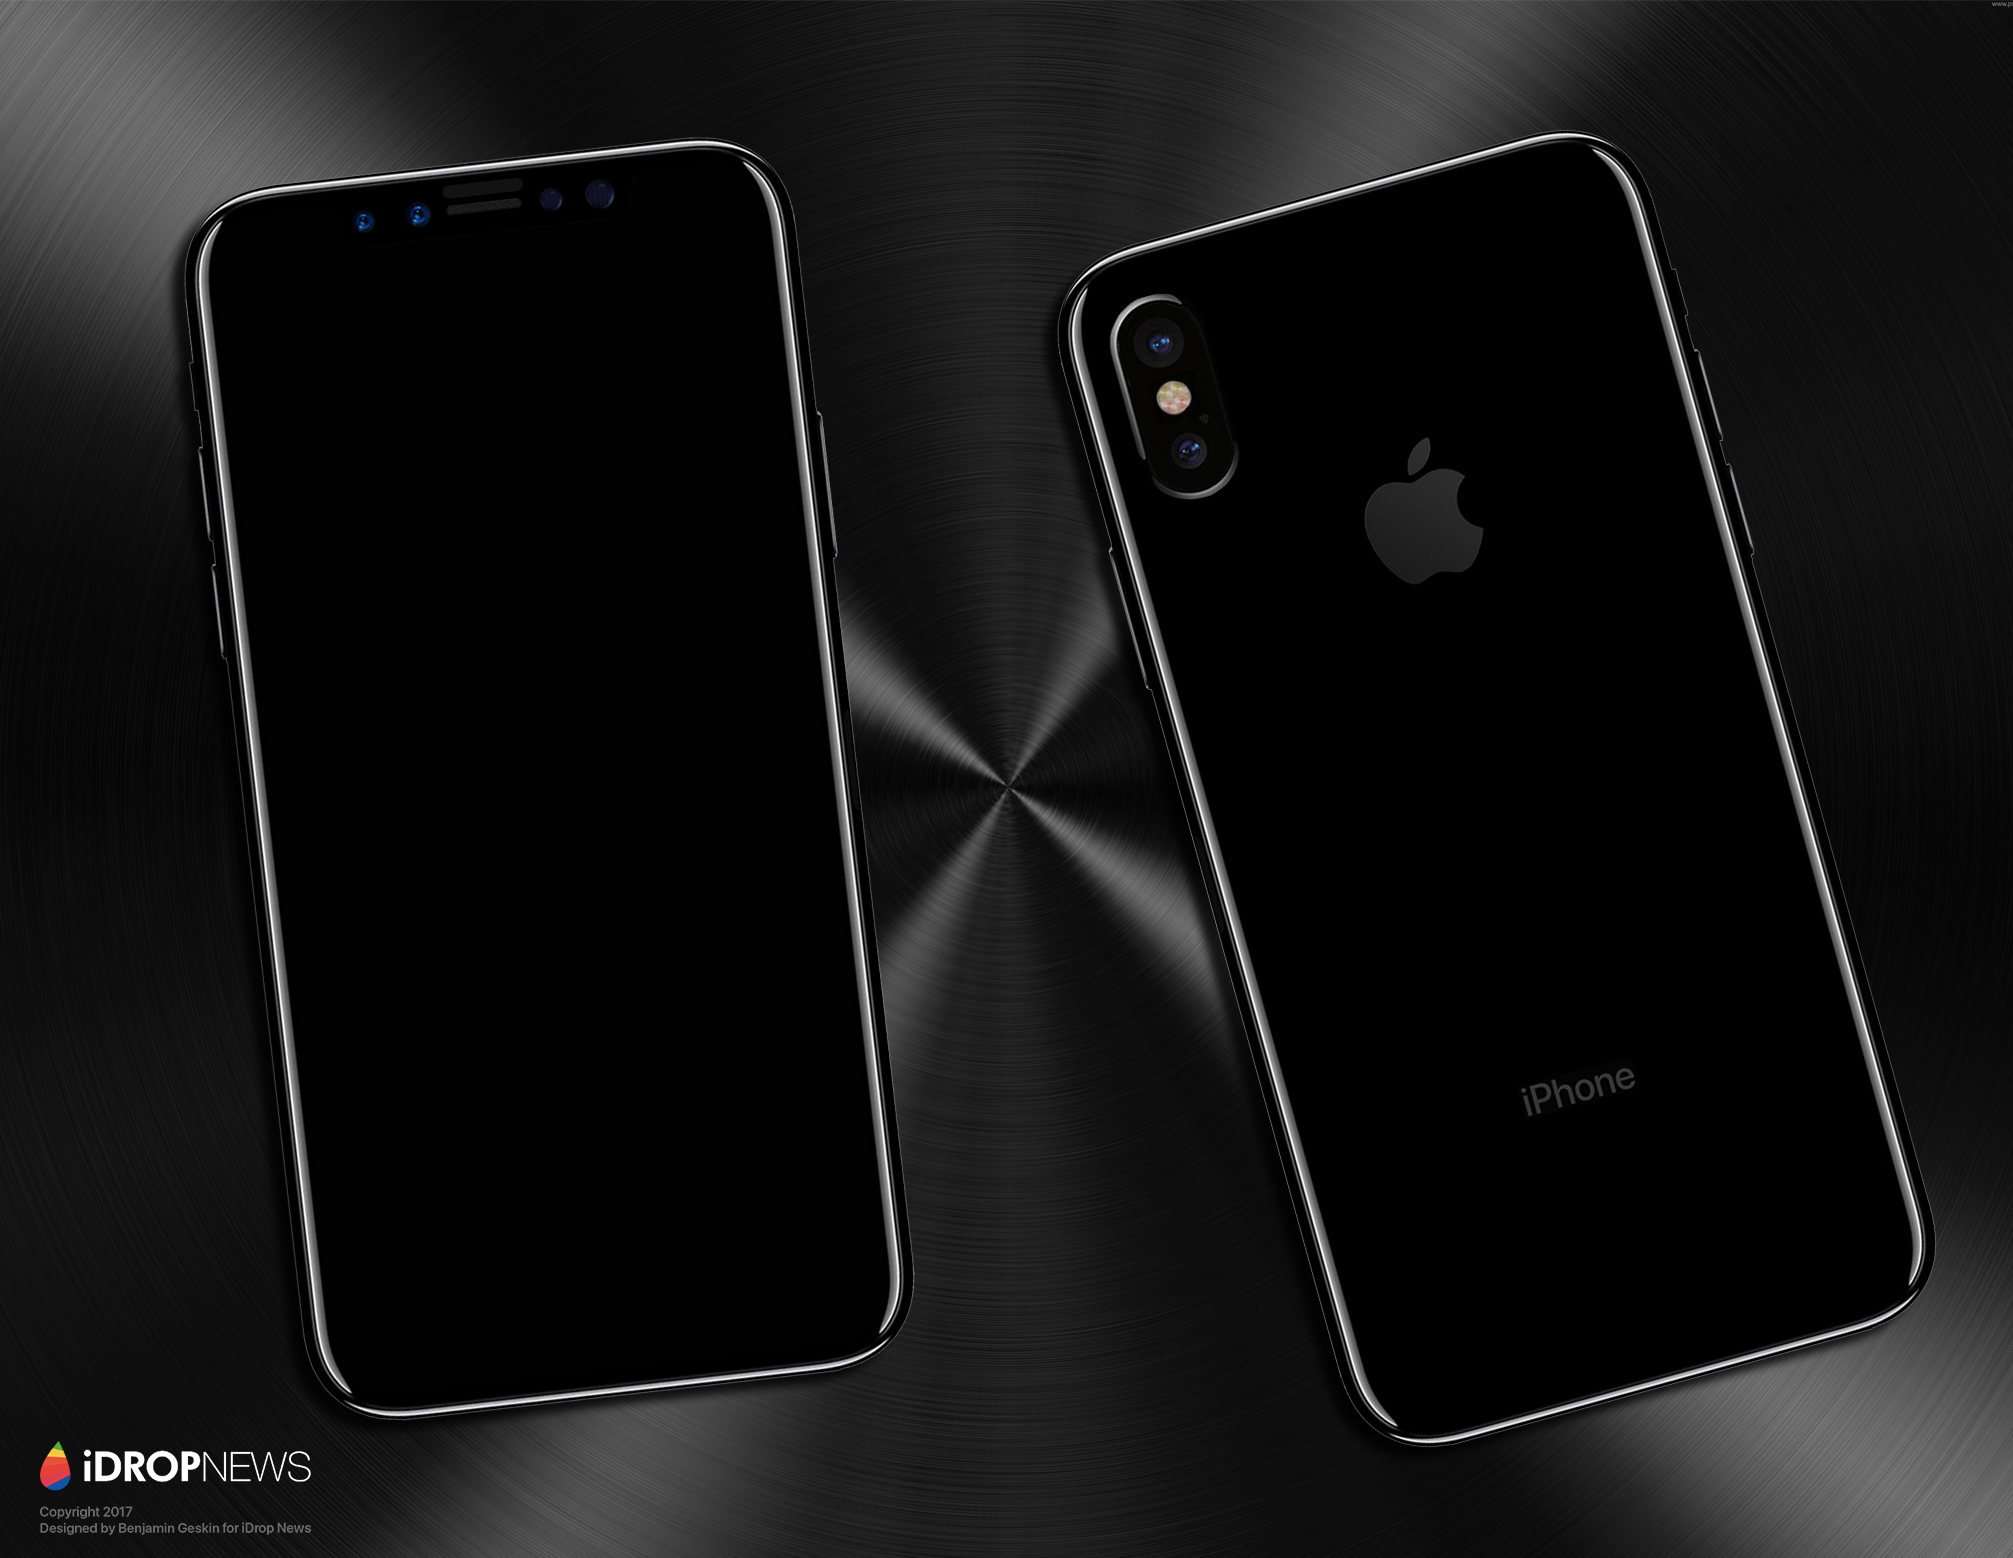 พรีวิว iPhone 8, 8 Plus เครื่องจริงชมสีใหม่ คลิป Hands-on แบบ 4K [รูปเยอะ]